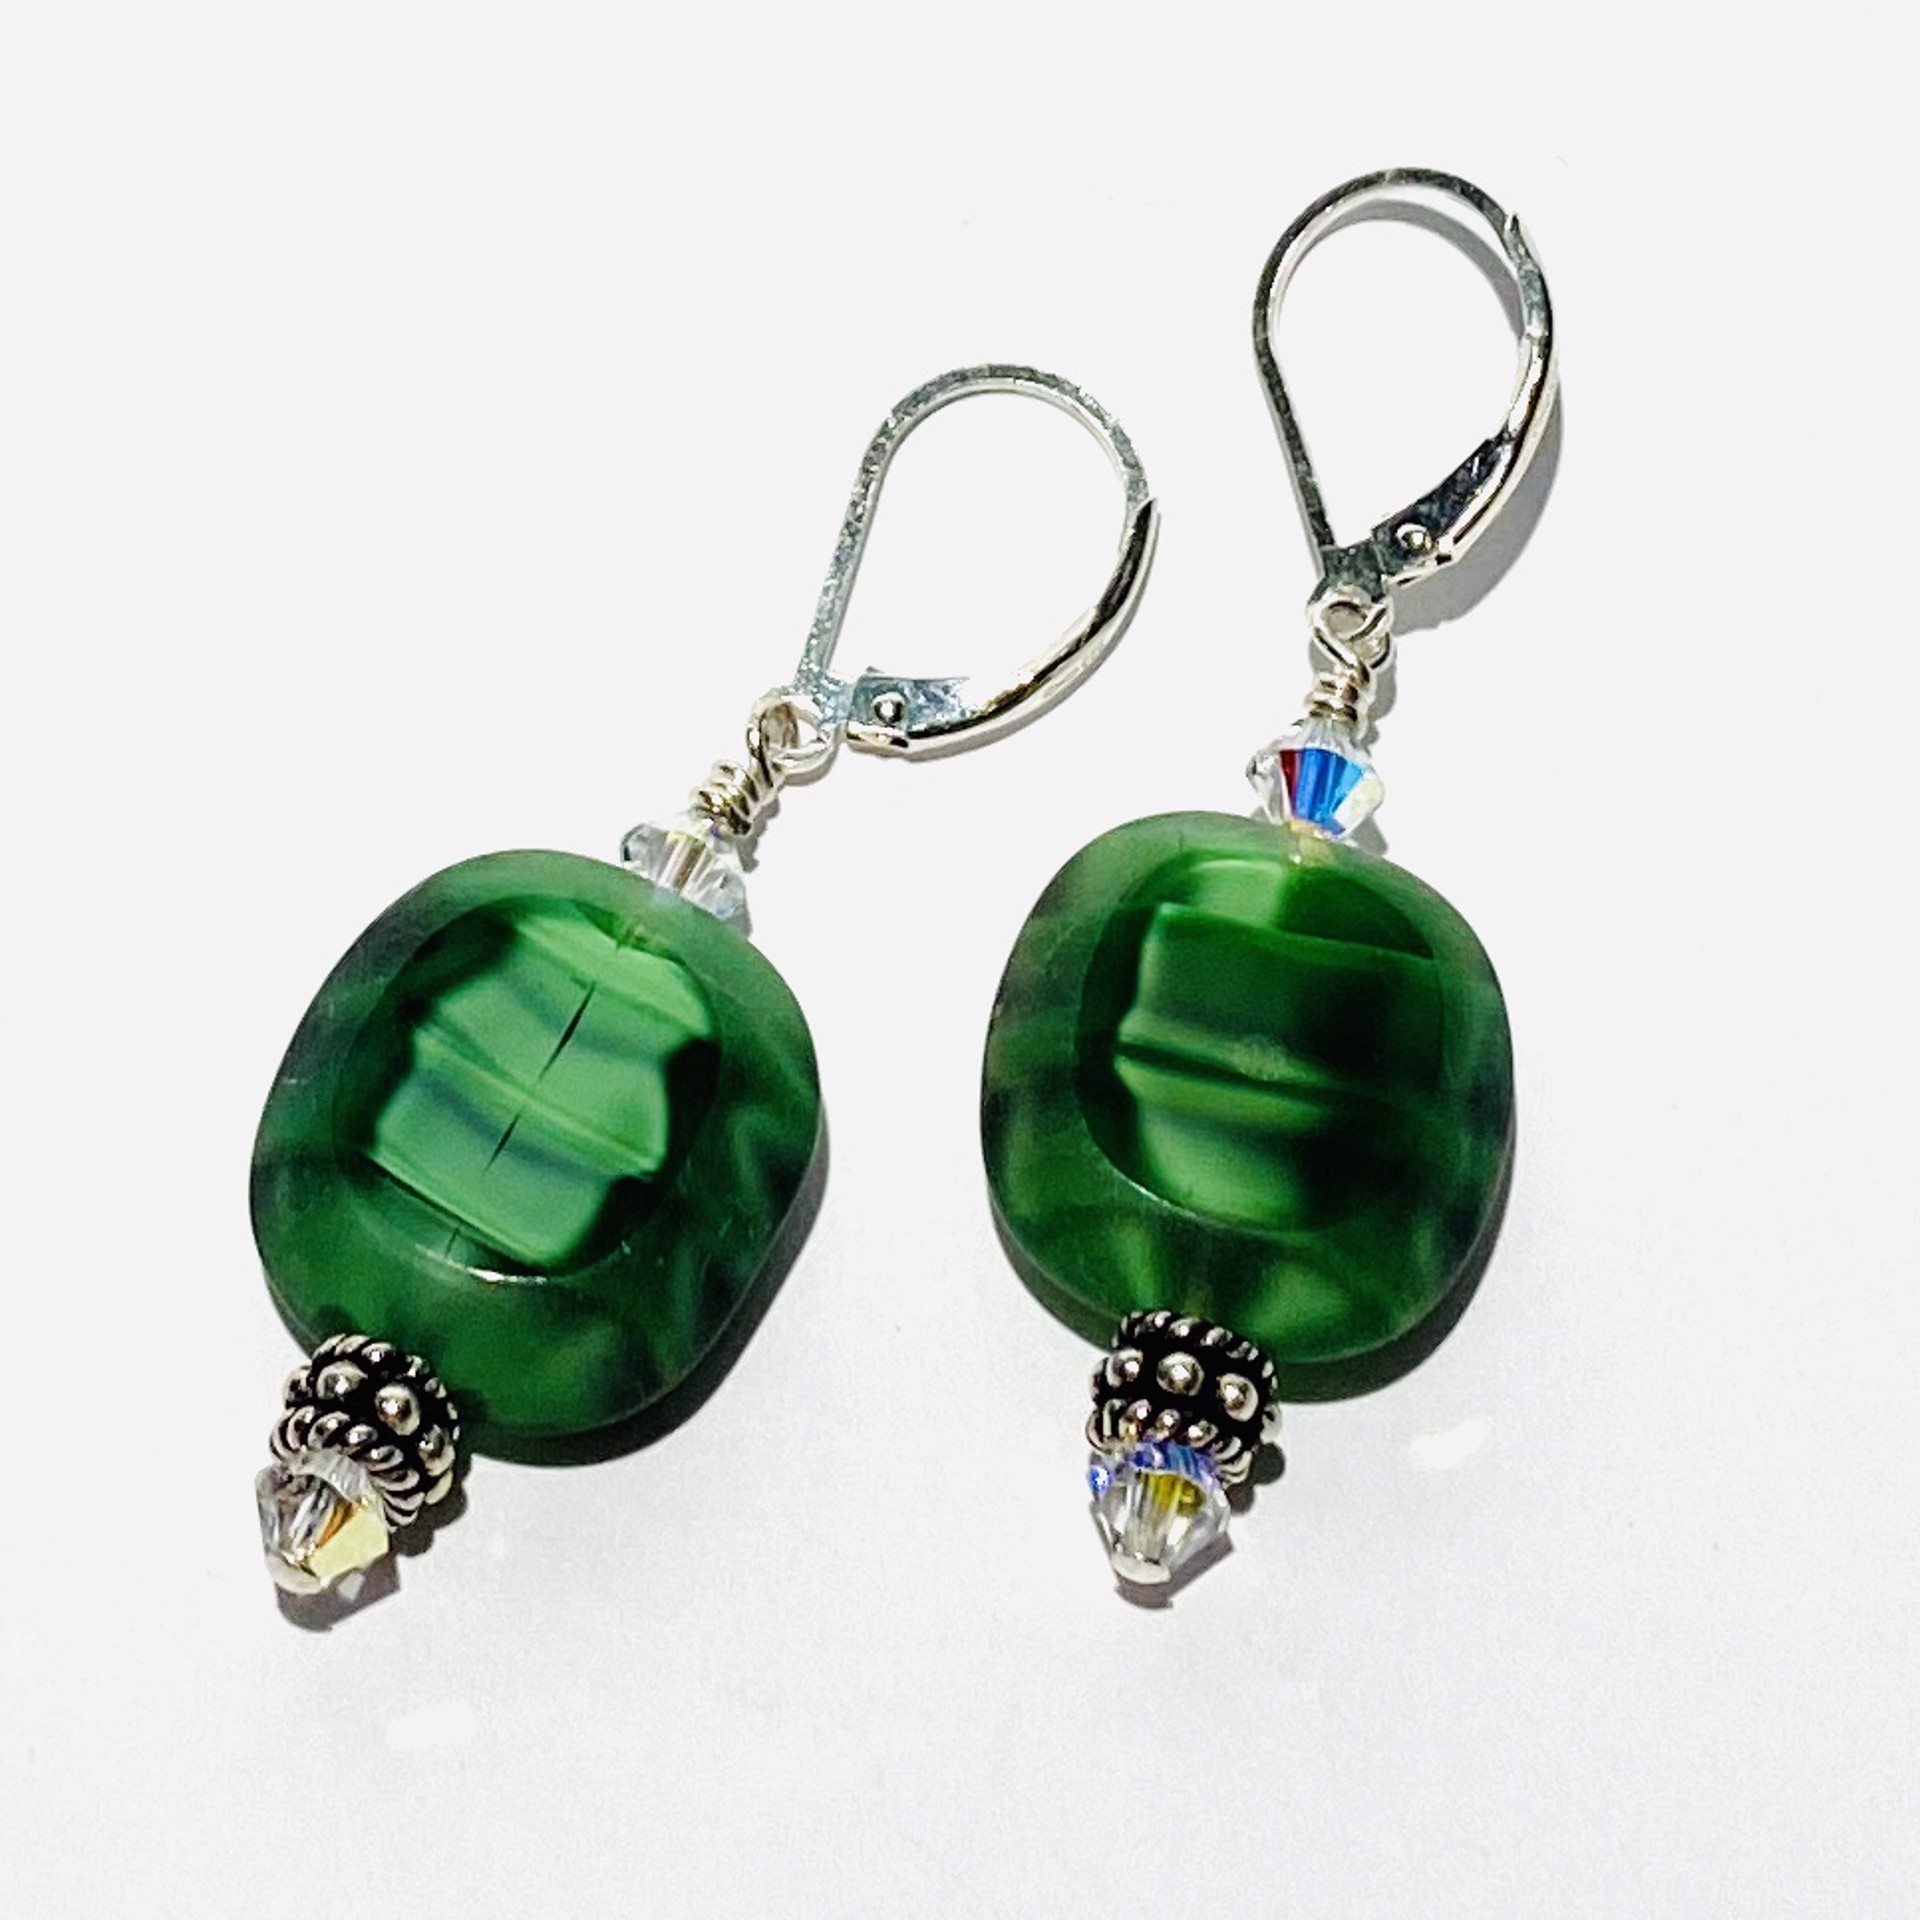 Green Art Glass Earrings, E79 by Shoshannah Weinisch